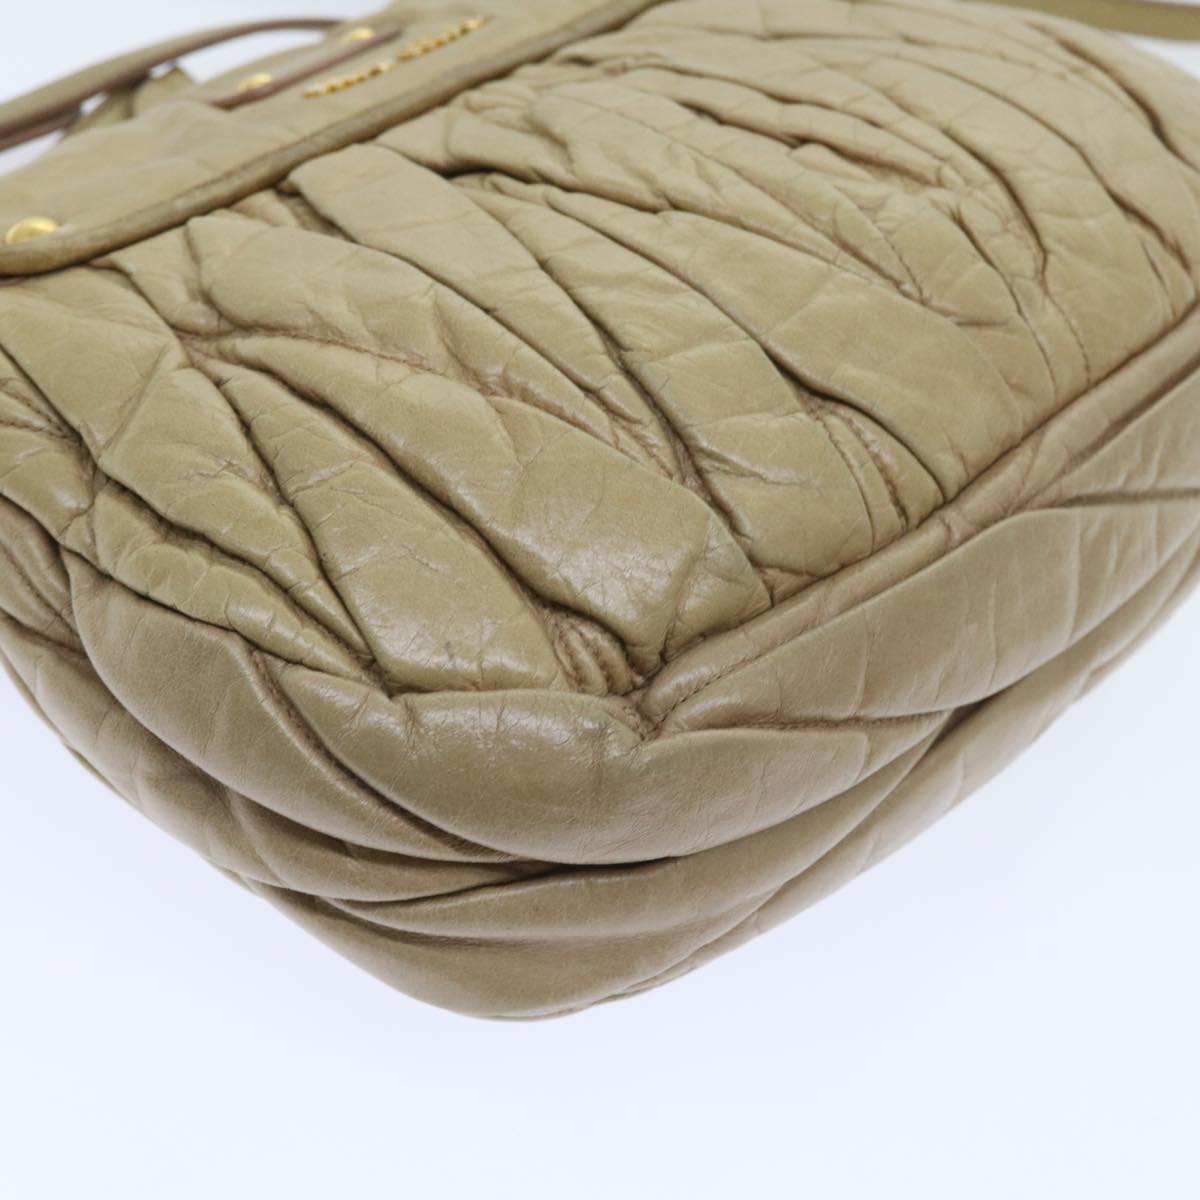 Miu Miu Materasse Hand Bag Leather 2way Beige Auth 55418